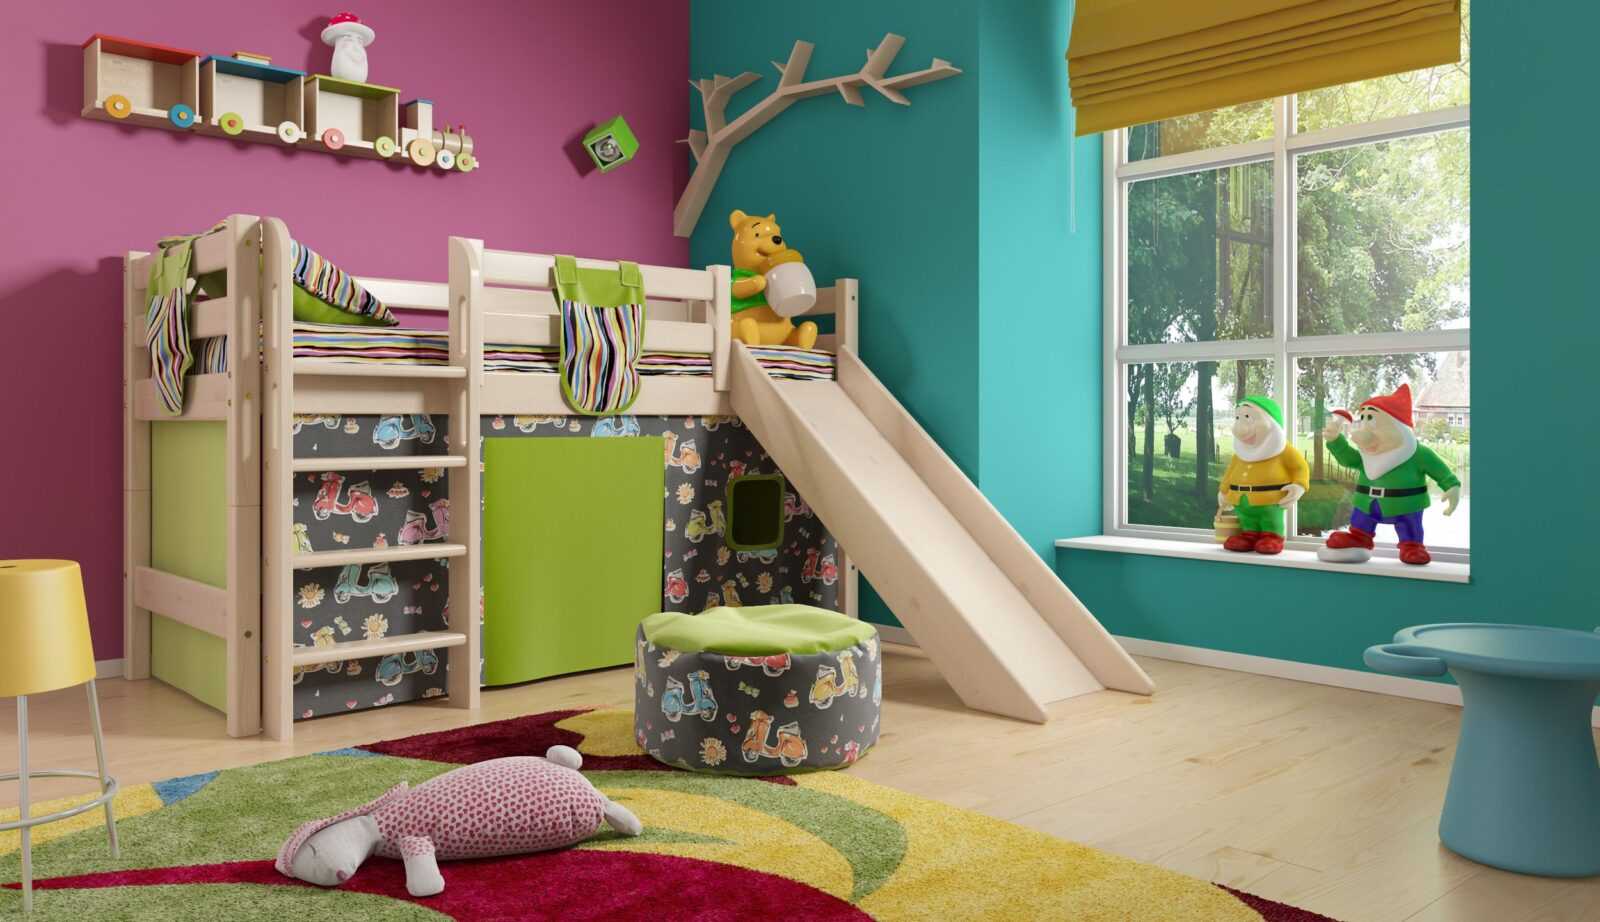 Функциональная кровать-чердак для детей, разновидности конструкций 15 - ДиванеТТо